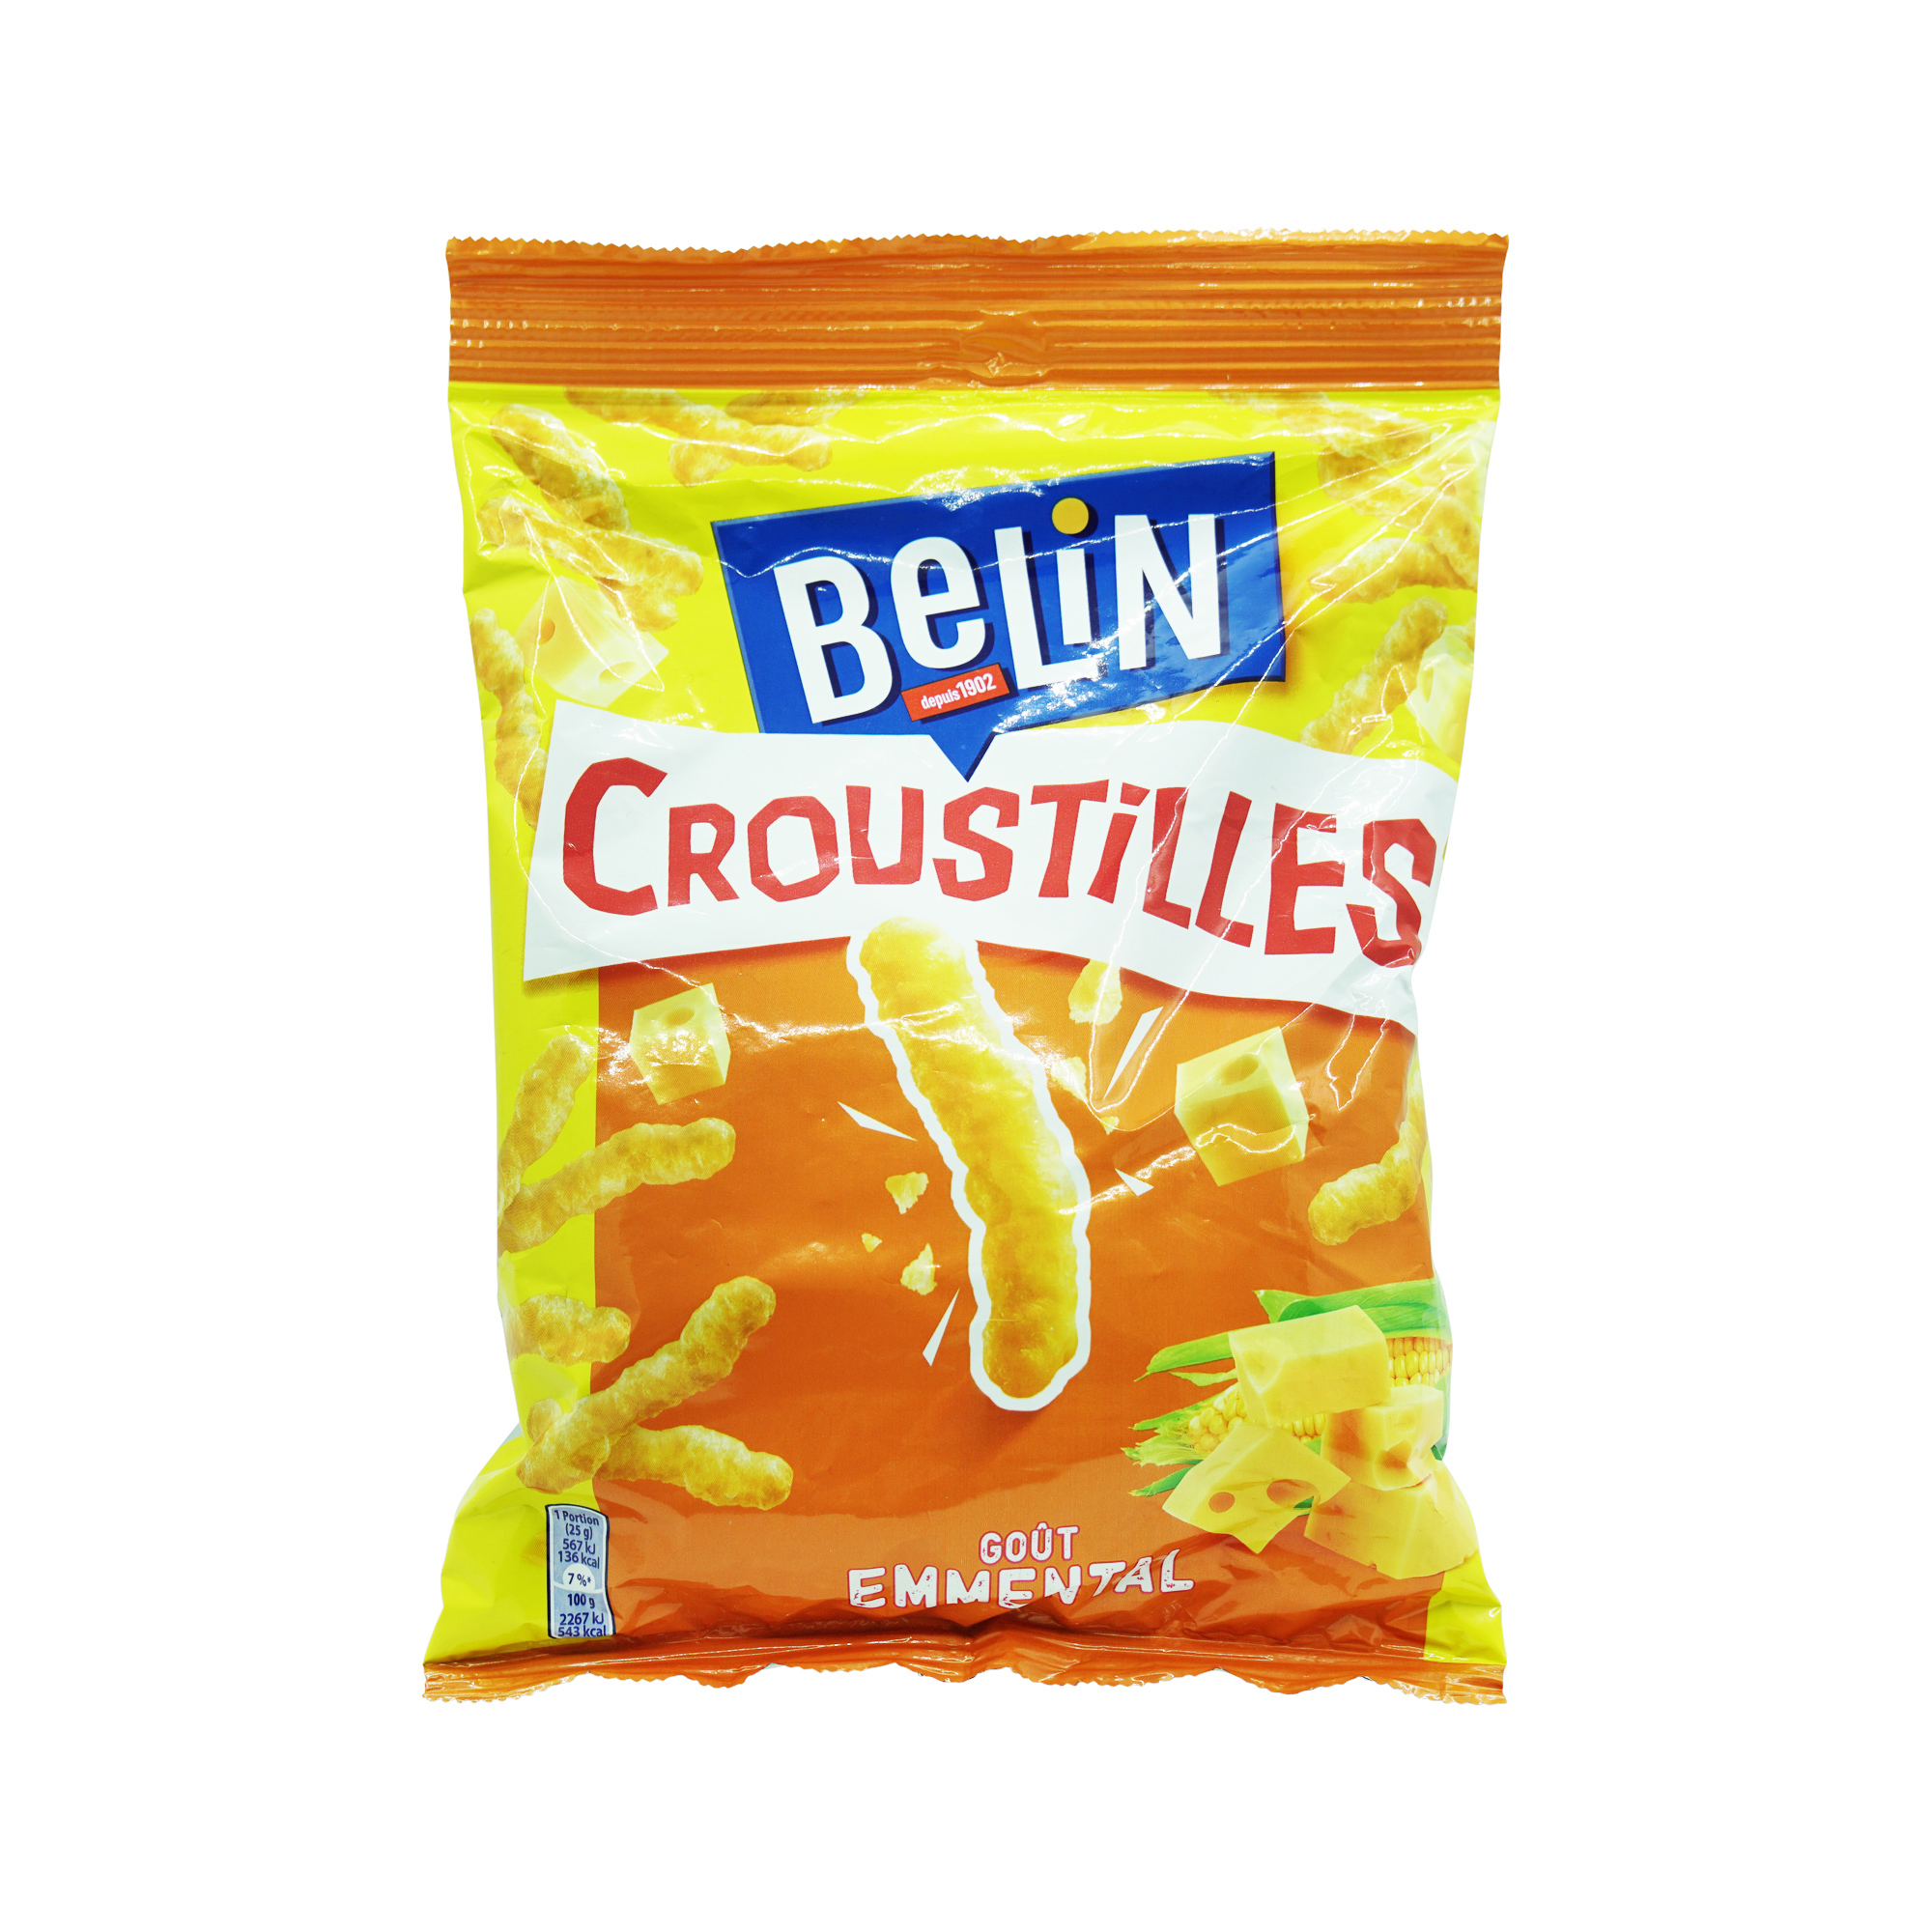 Belin Croustilles Emmental (88g)